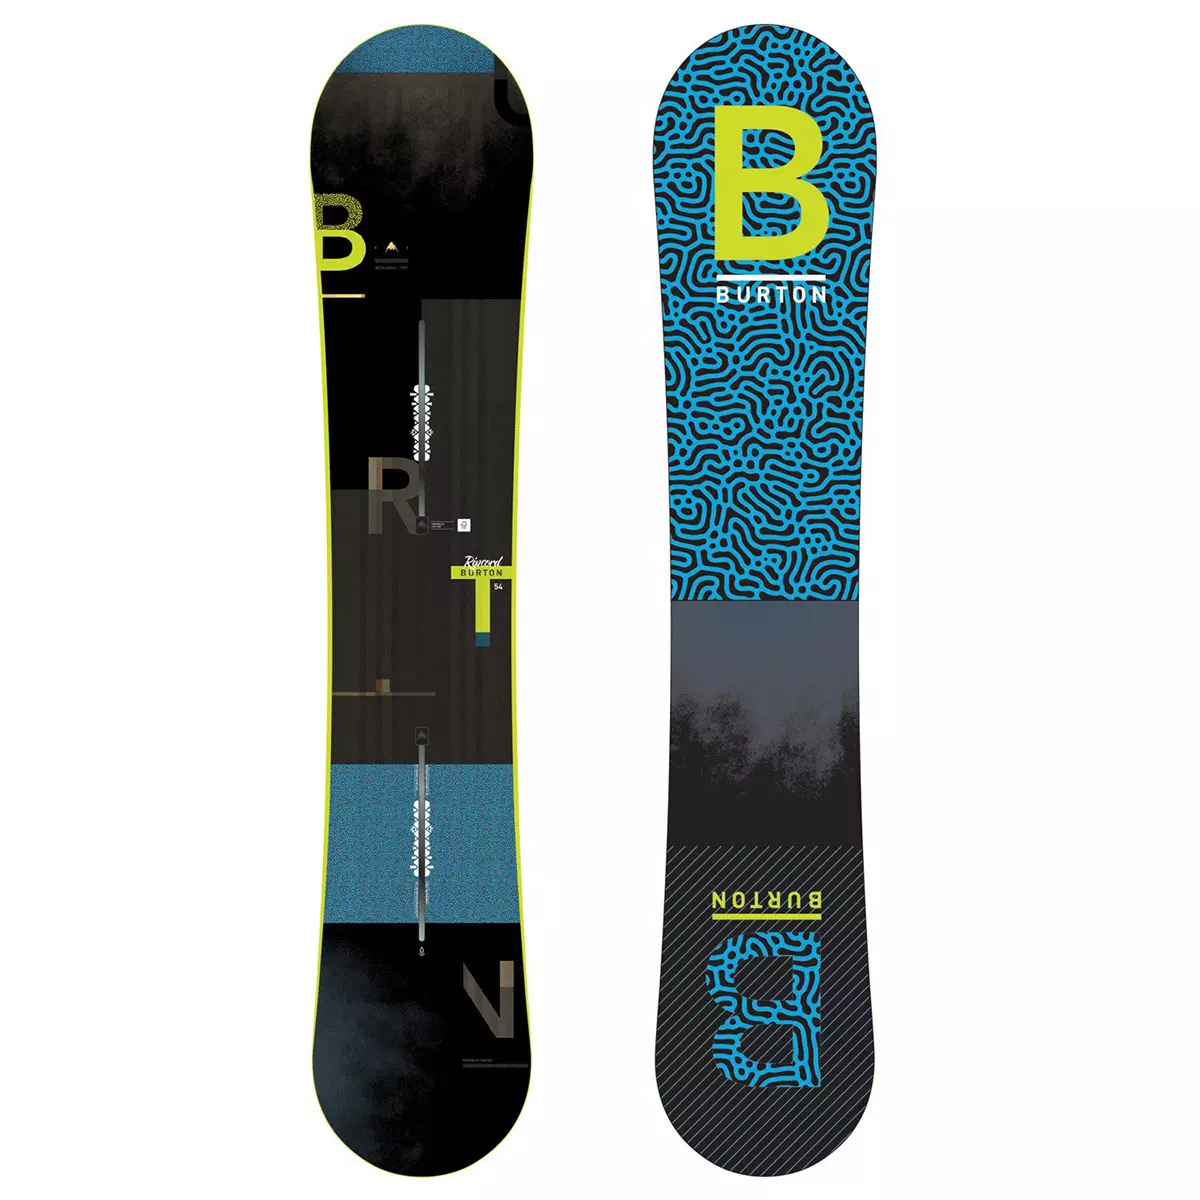 Snowboards de Burton: placas infantís, mulleres e homes. Fixación para snowboards de nenos e adultos, pros e contras dos modelos firmes 20233_15